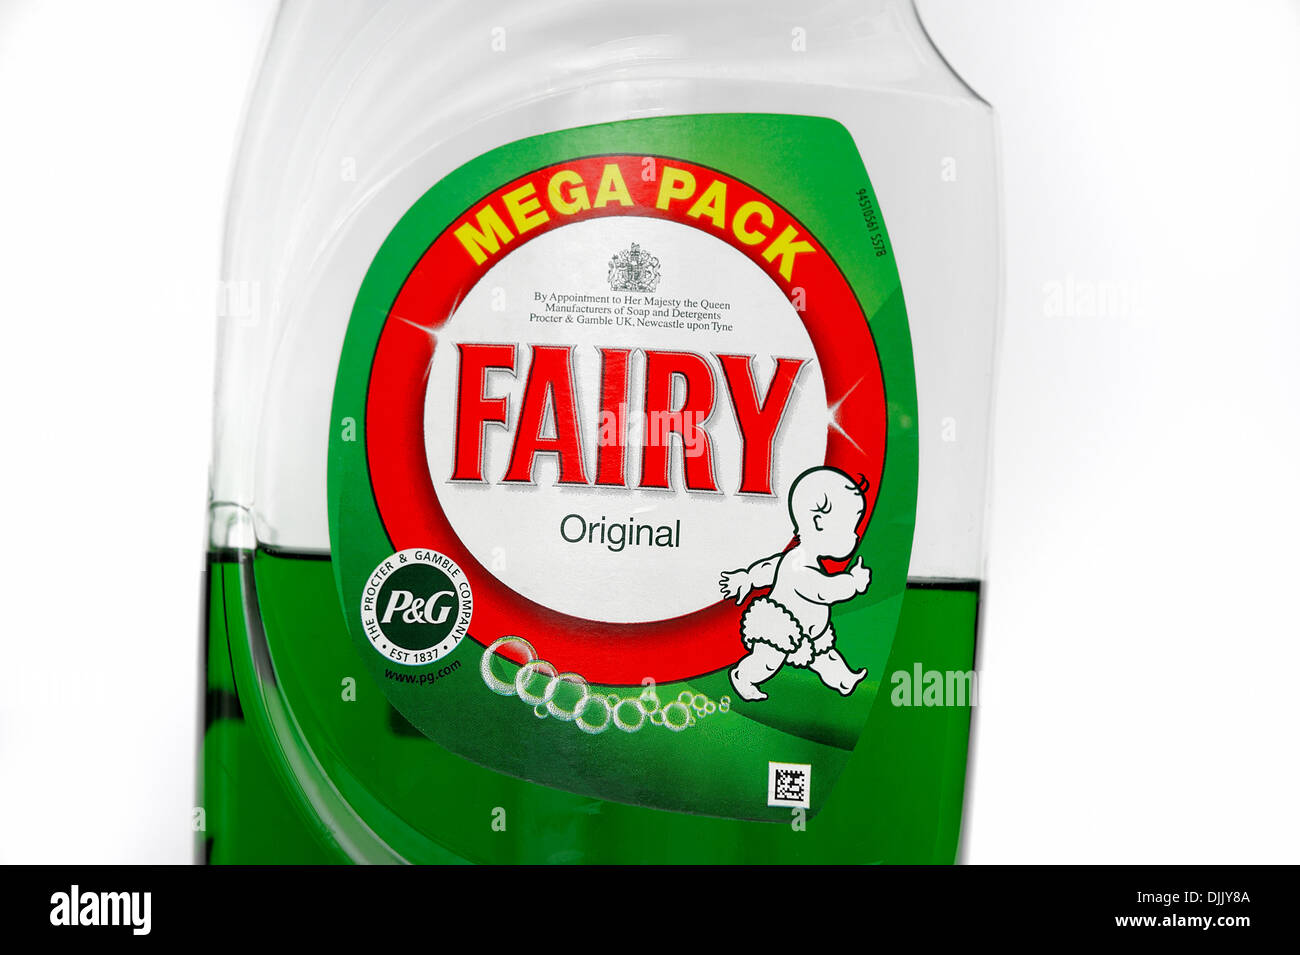 Mega pack of Fairy Liquid original Stock Photo